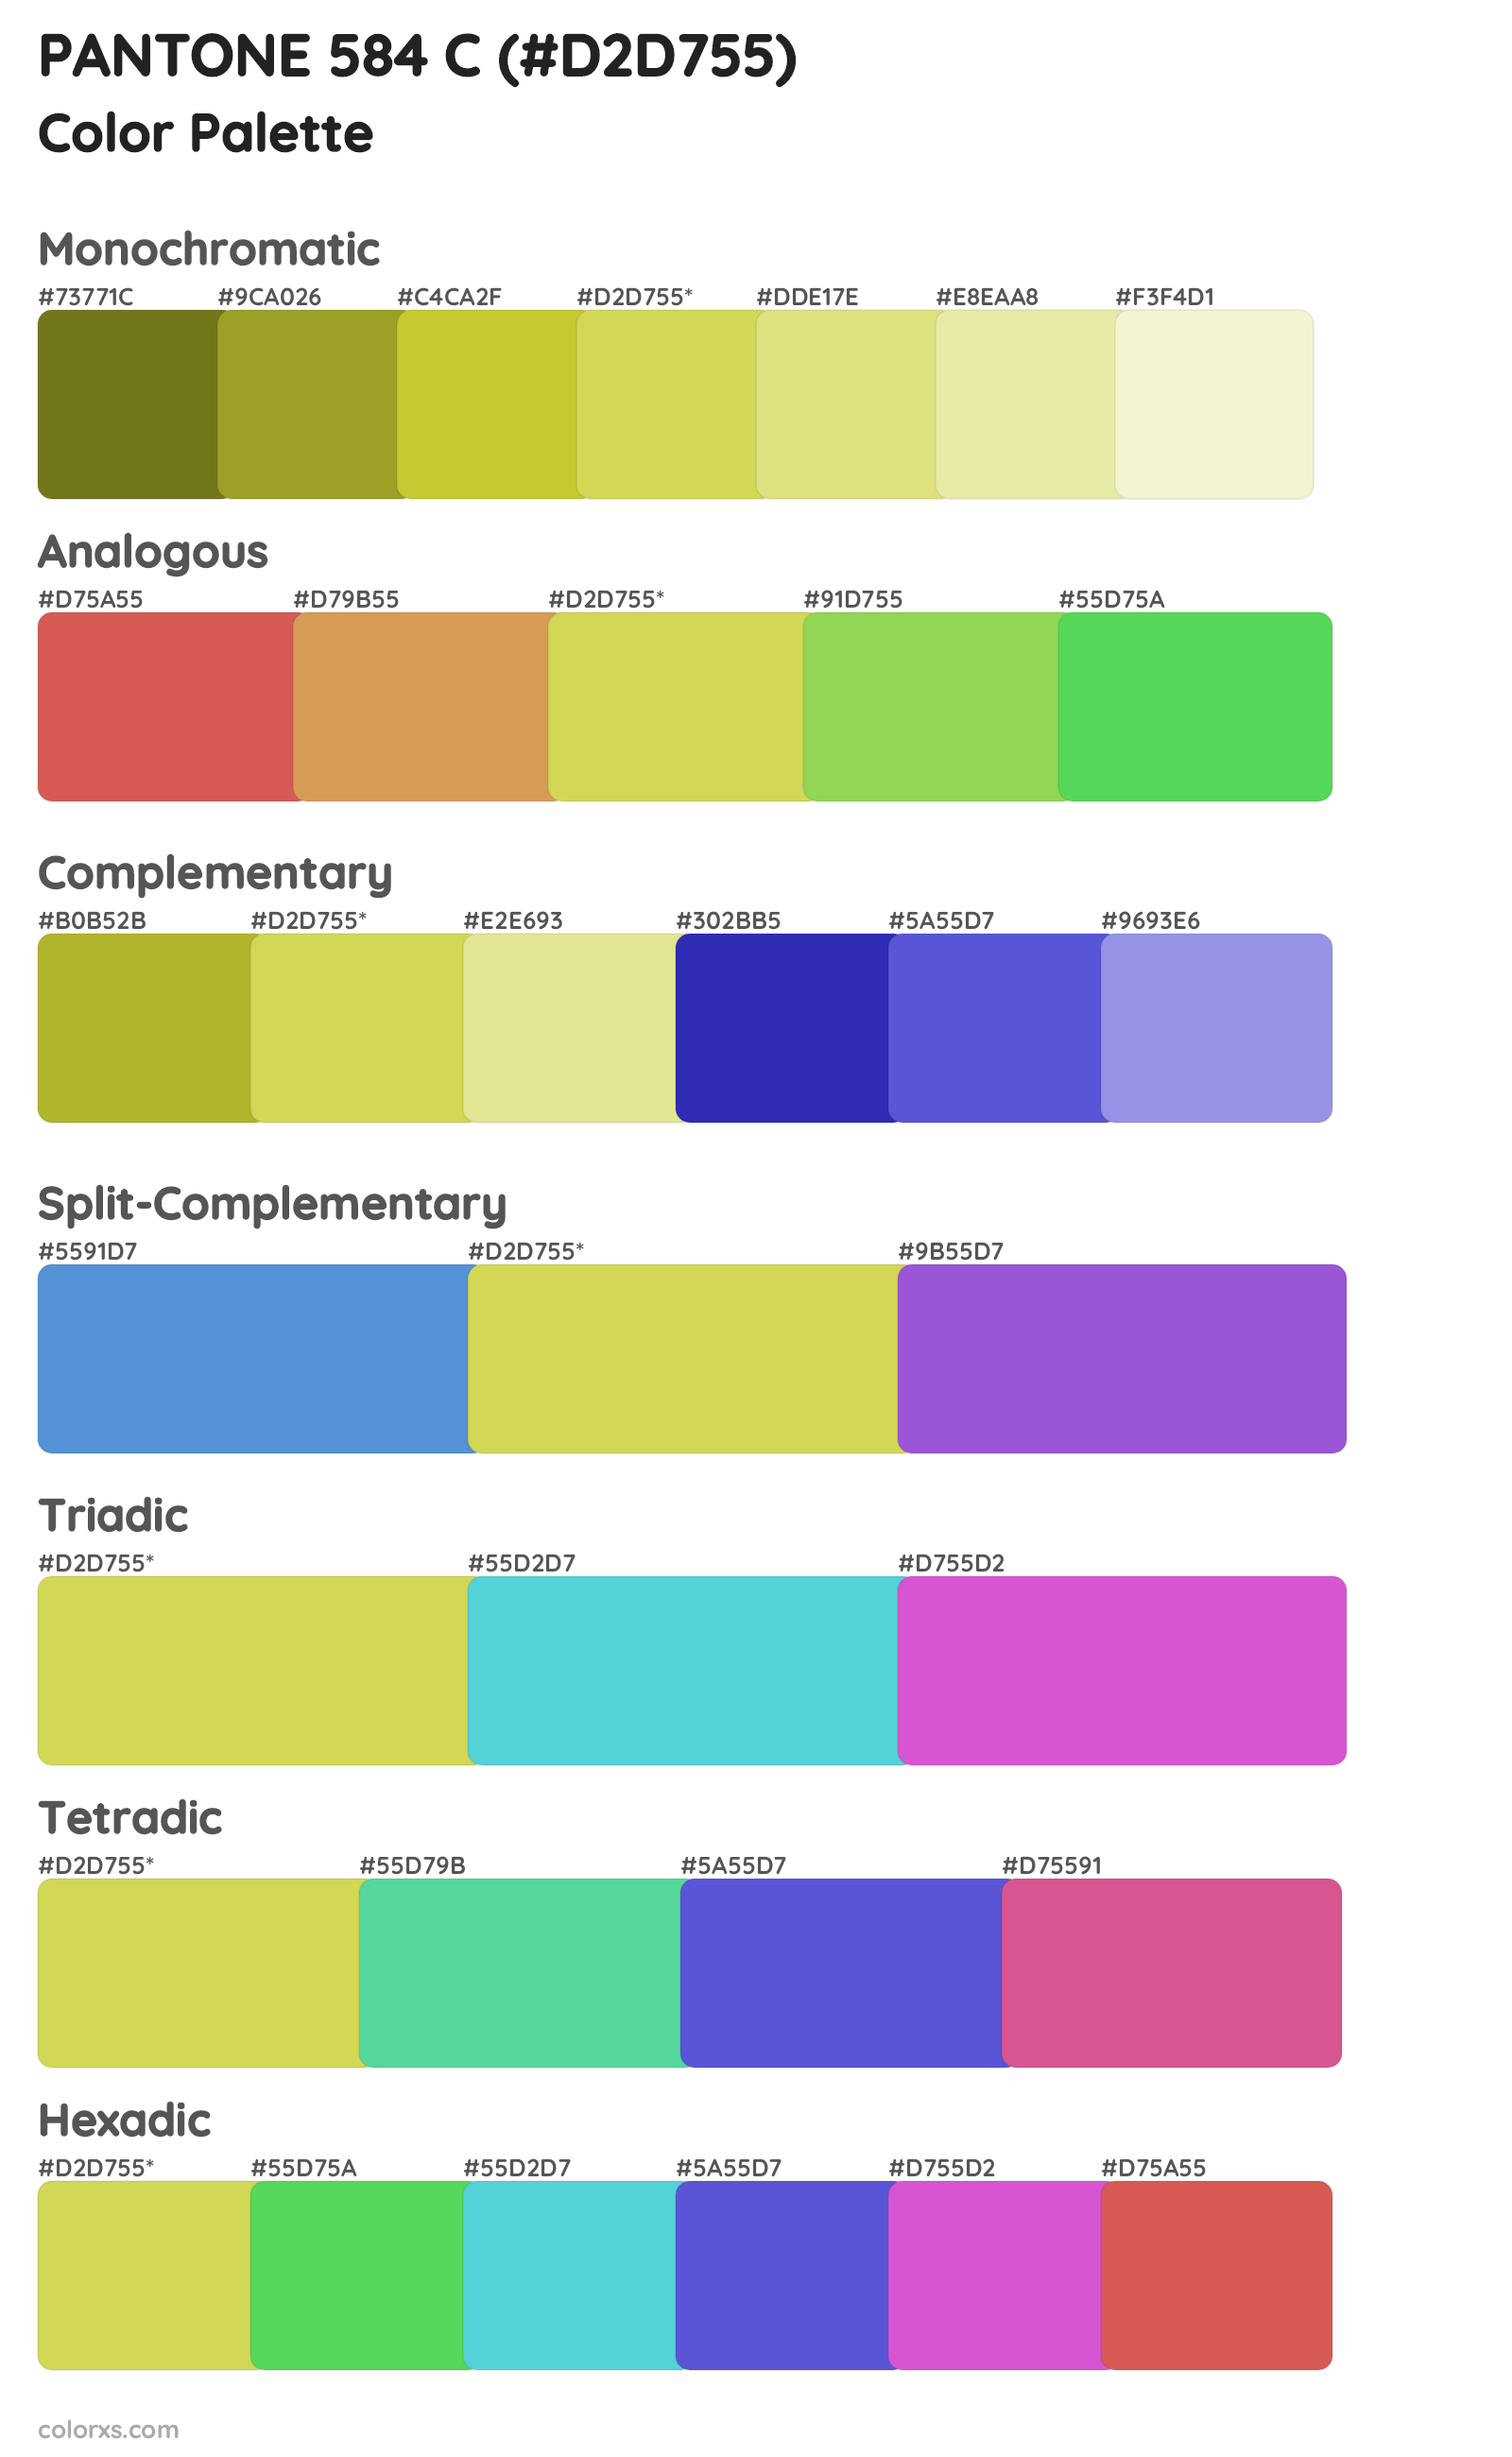 PANTONE 584 C Color Scheme Palettes